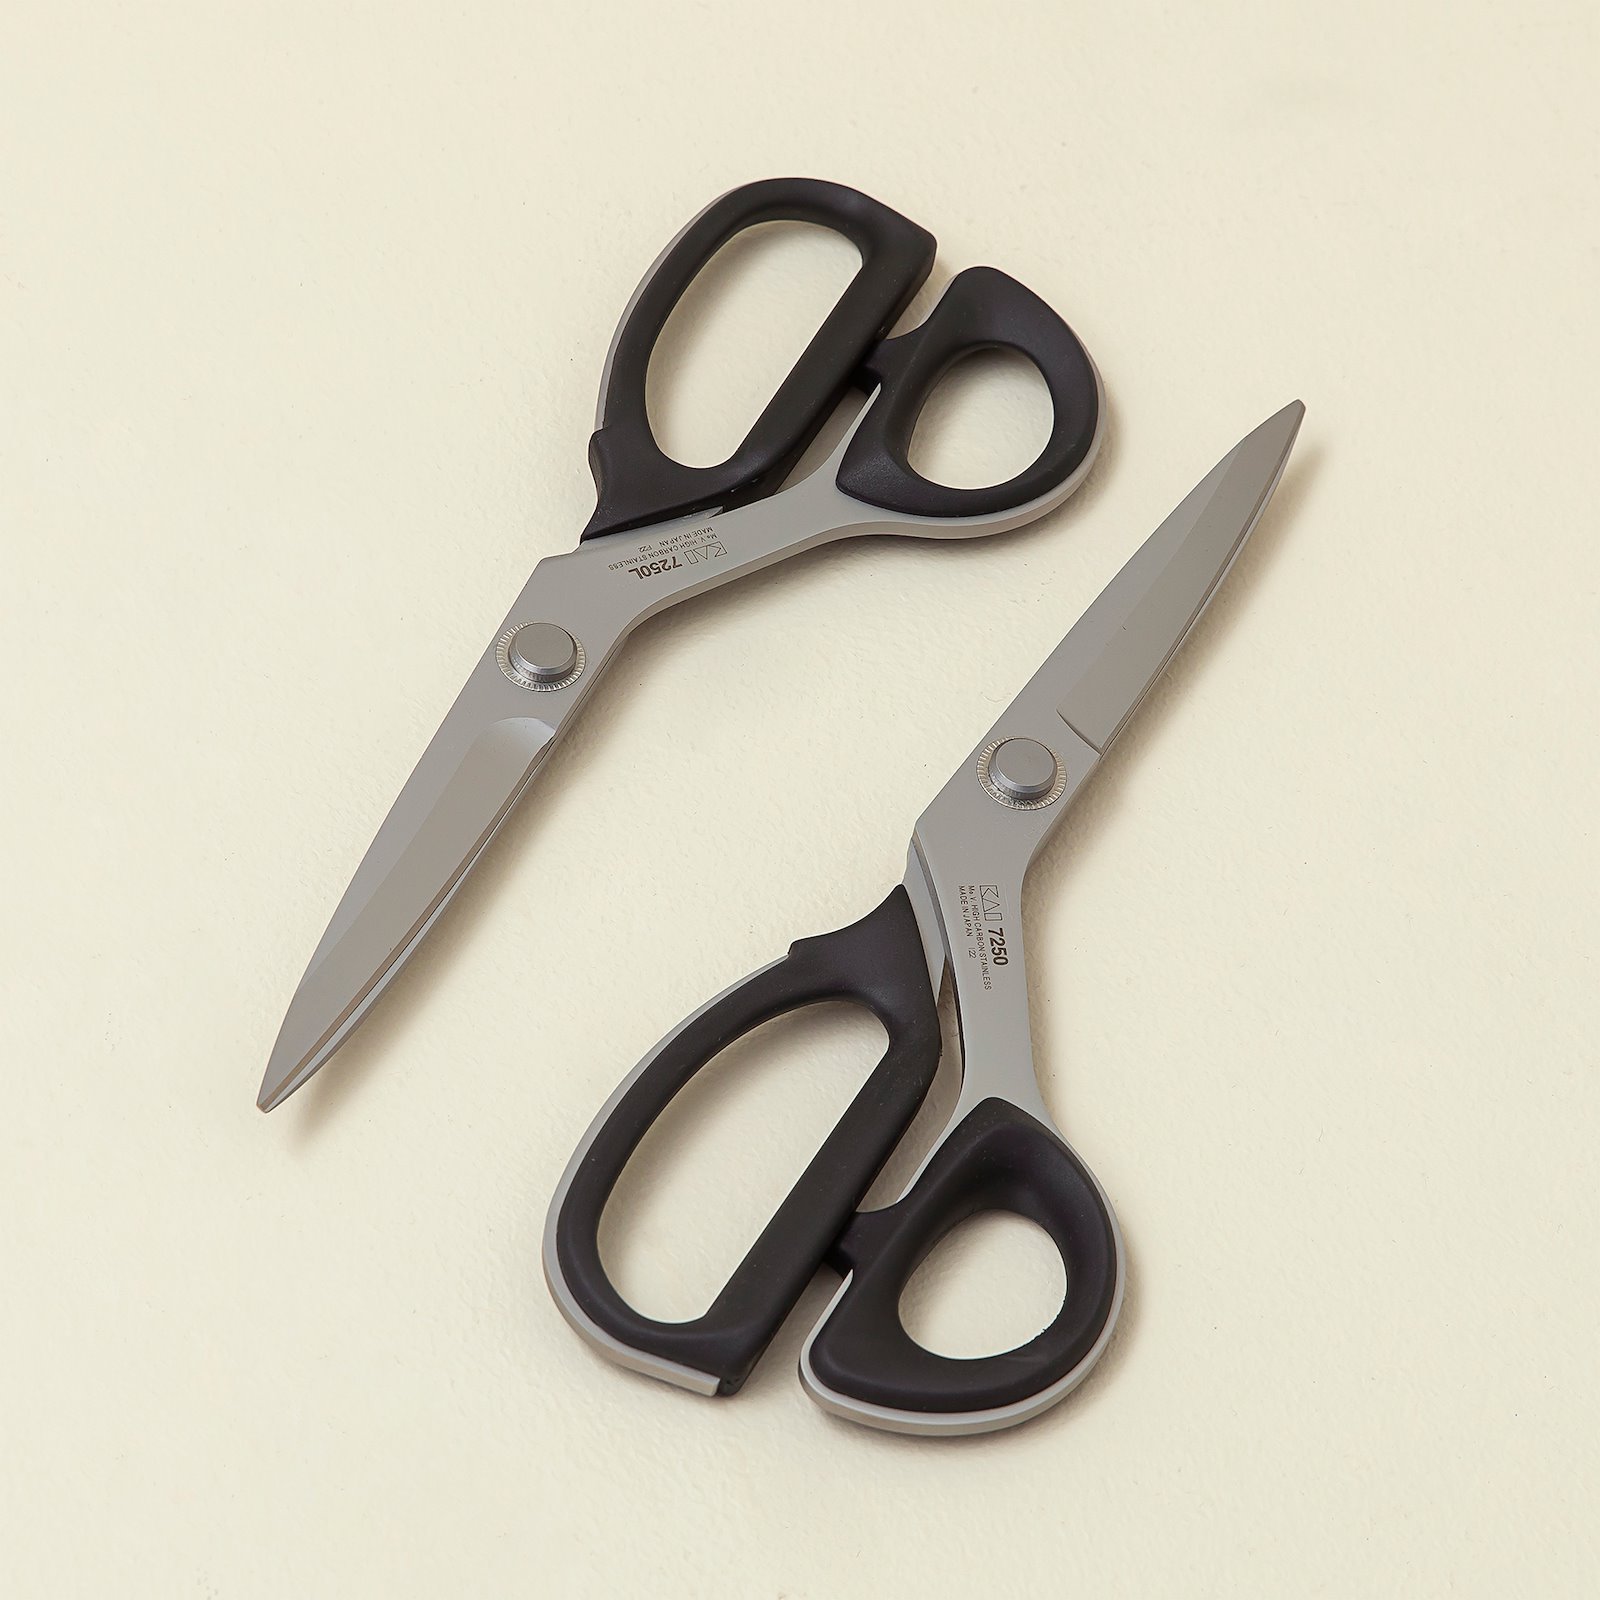 KAI tailor scissors  25cm 42081_42082_sskit